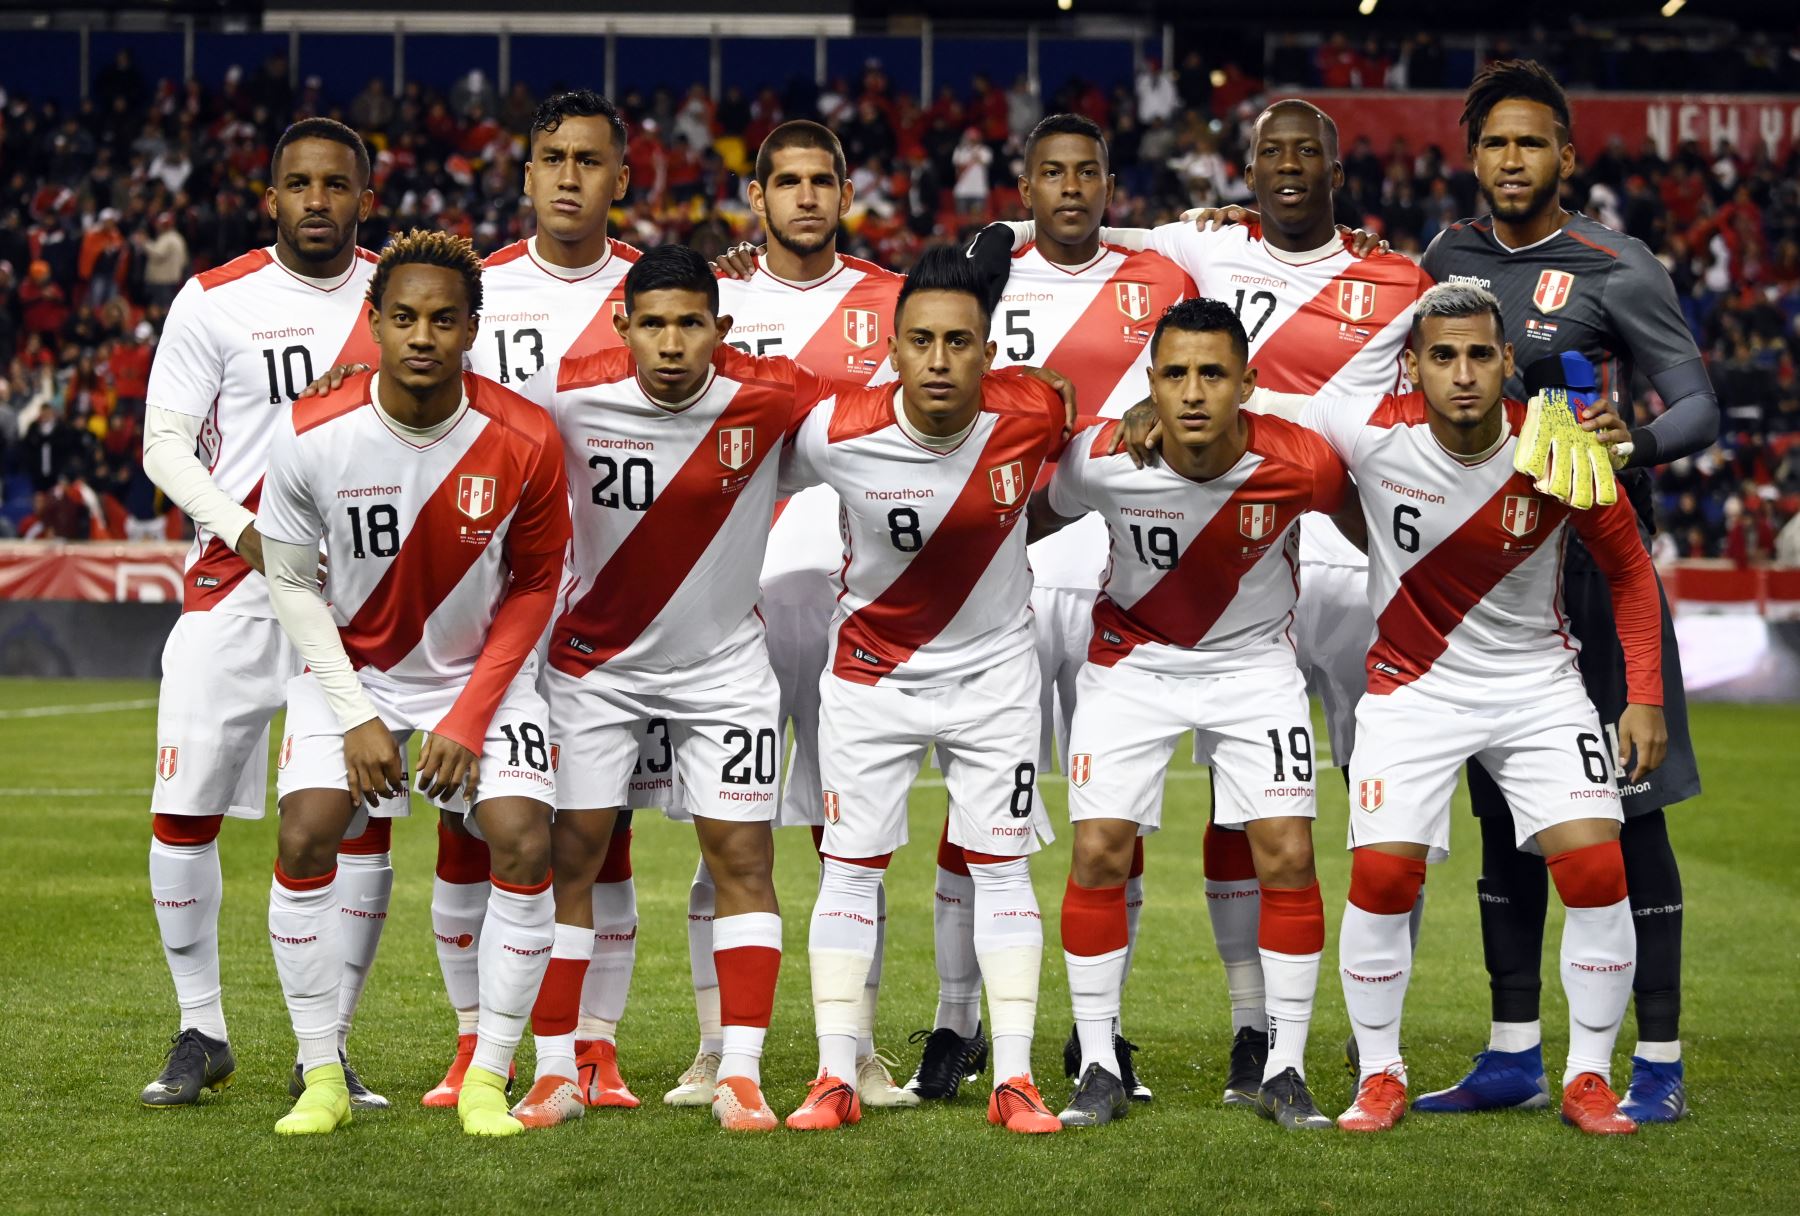 El equipo de fútbol de Perú posa para una foto de grupo durante el partido amistoso internacional entre Perú y Paraguay en el Red Bull Arena de Nueva Jersey.Foto:AFP